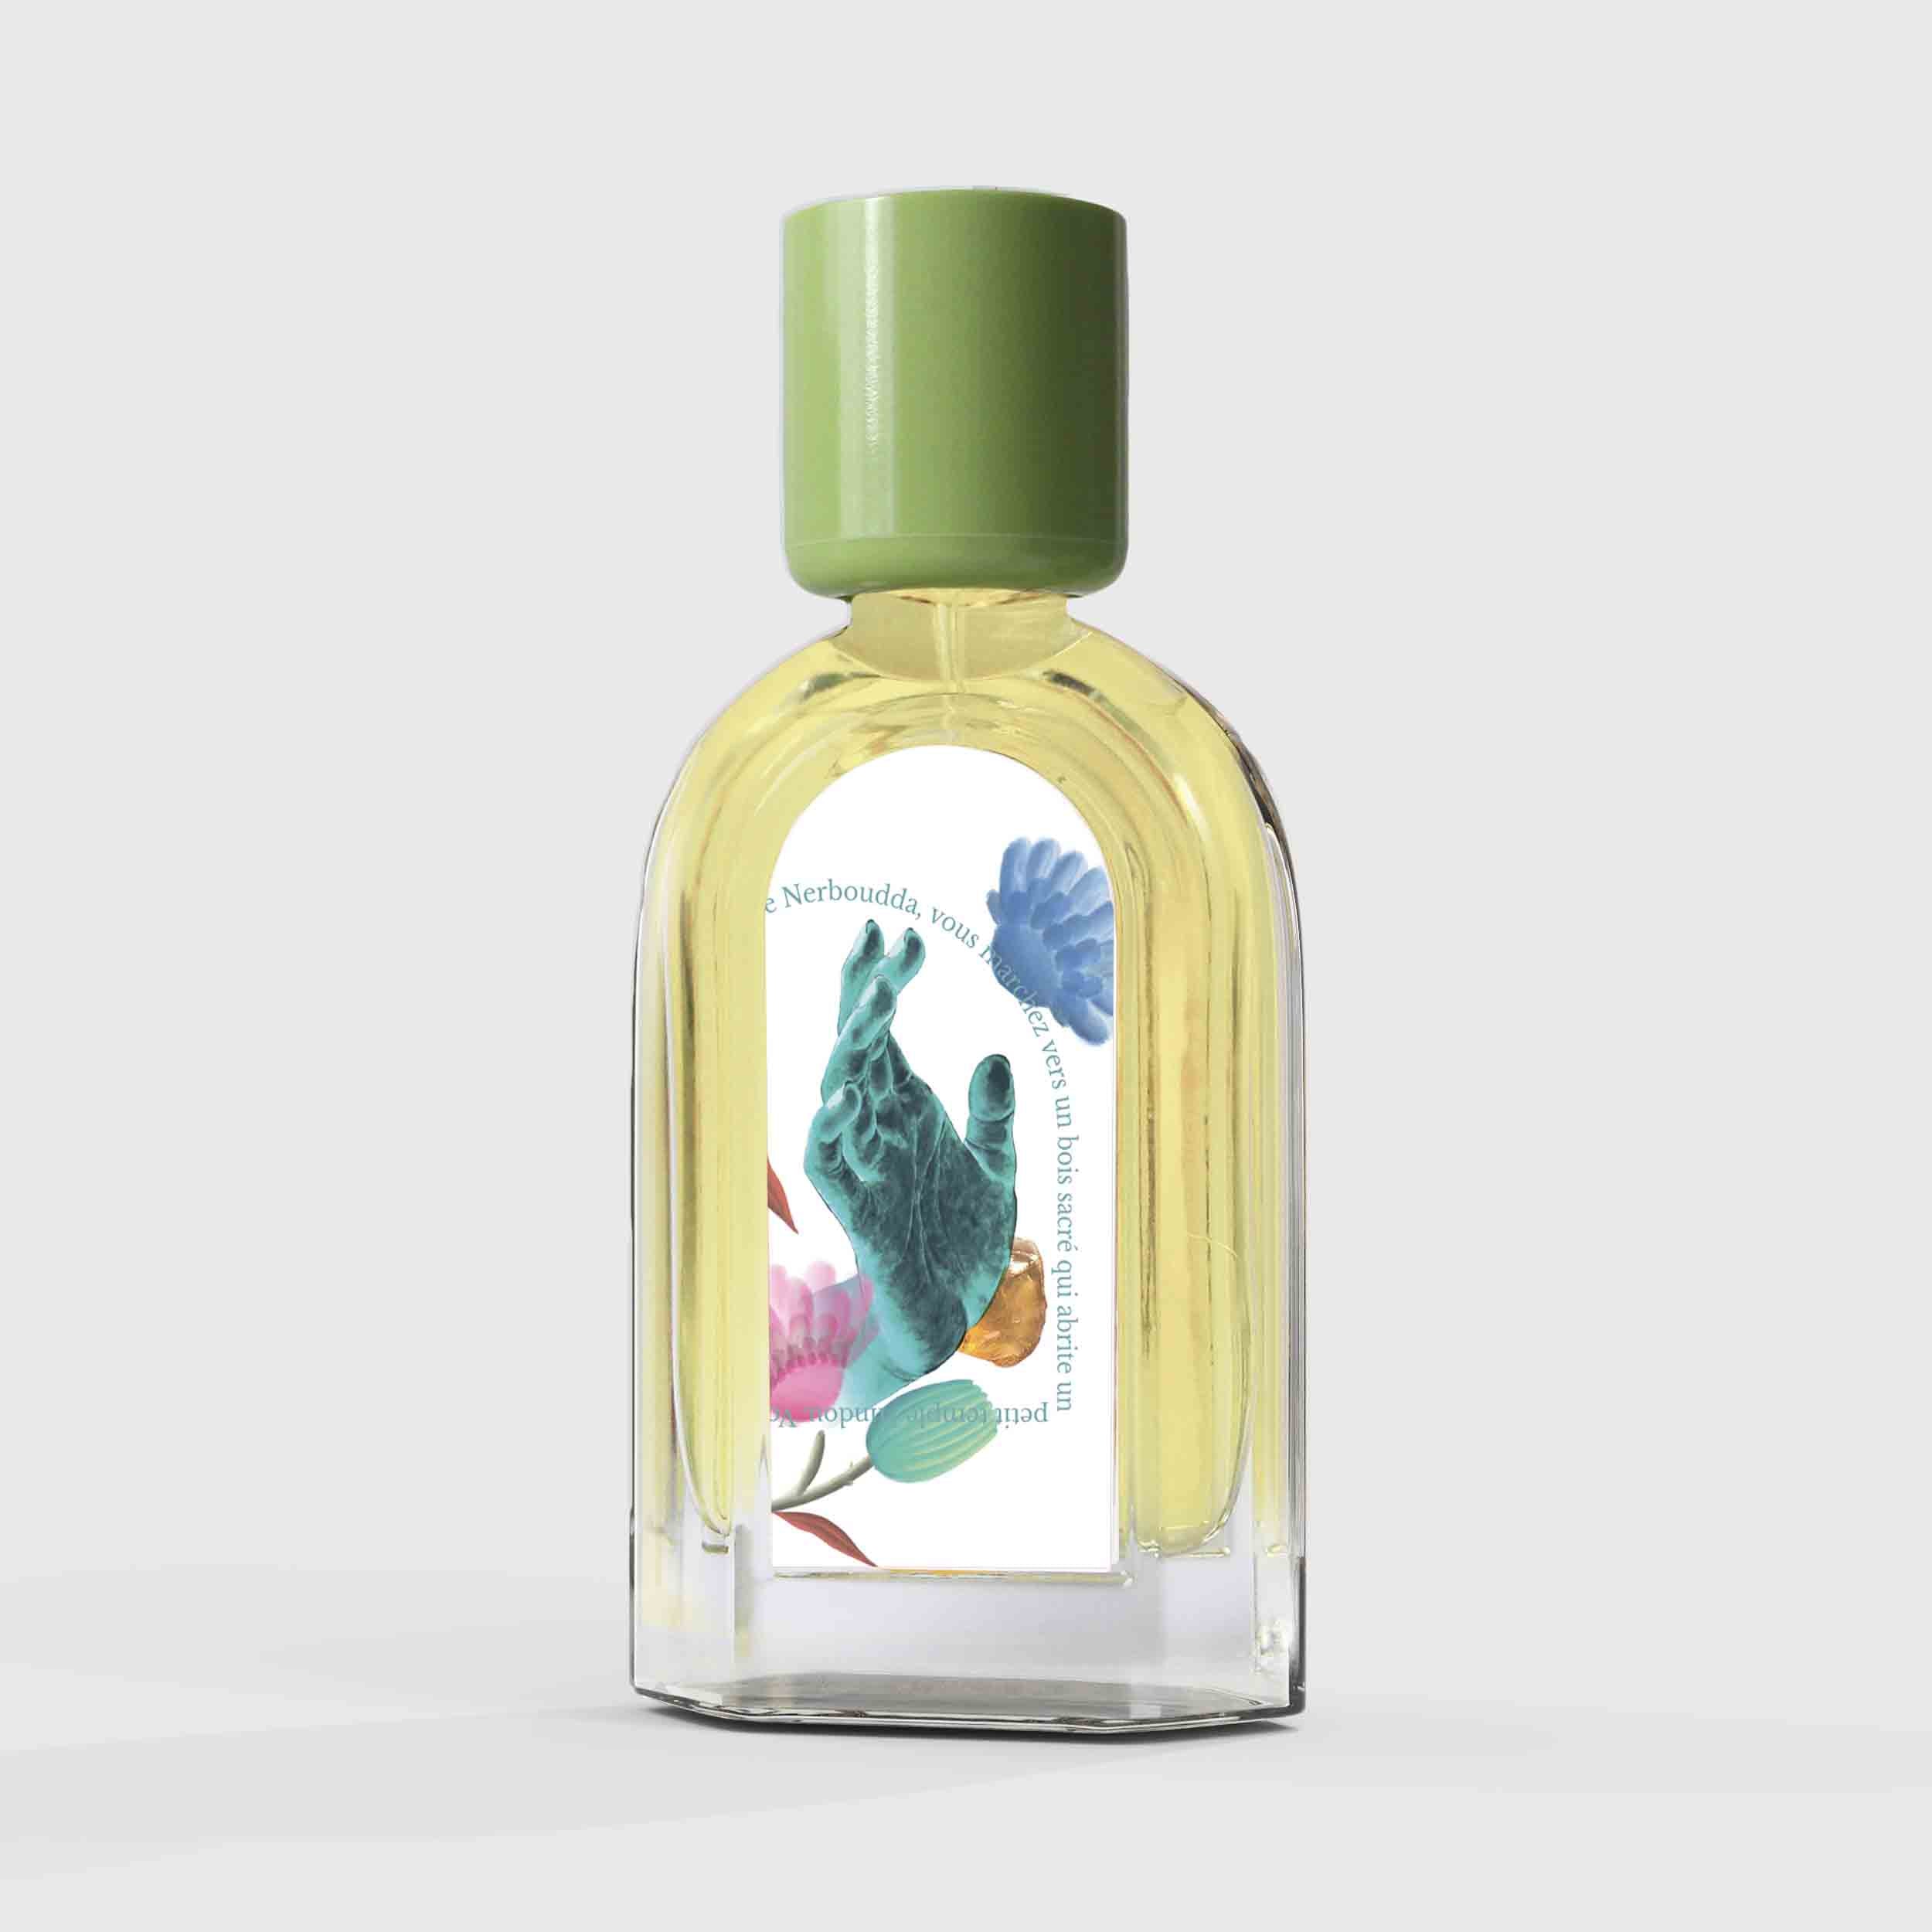 Sandalwood Sacré Eau de Parfum 50ml Bottle by Le Jardin Retrouvé